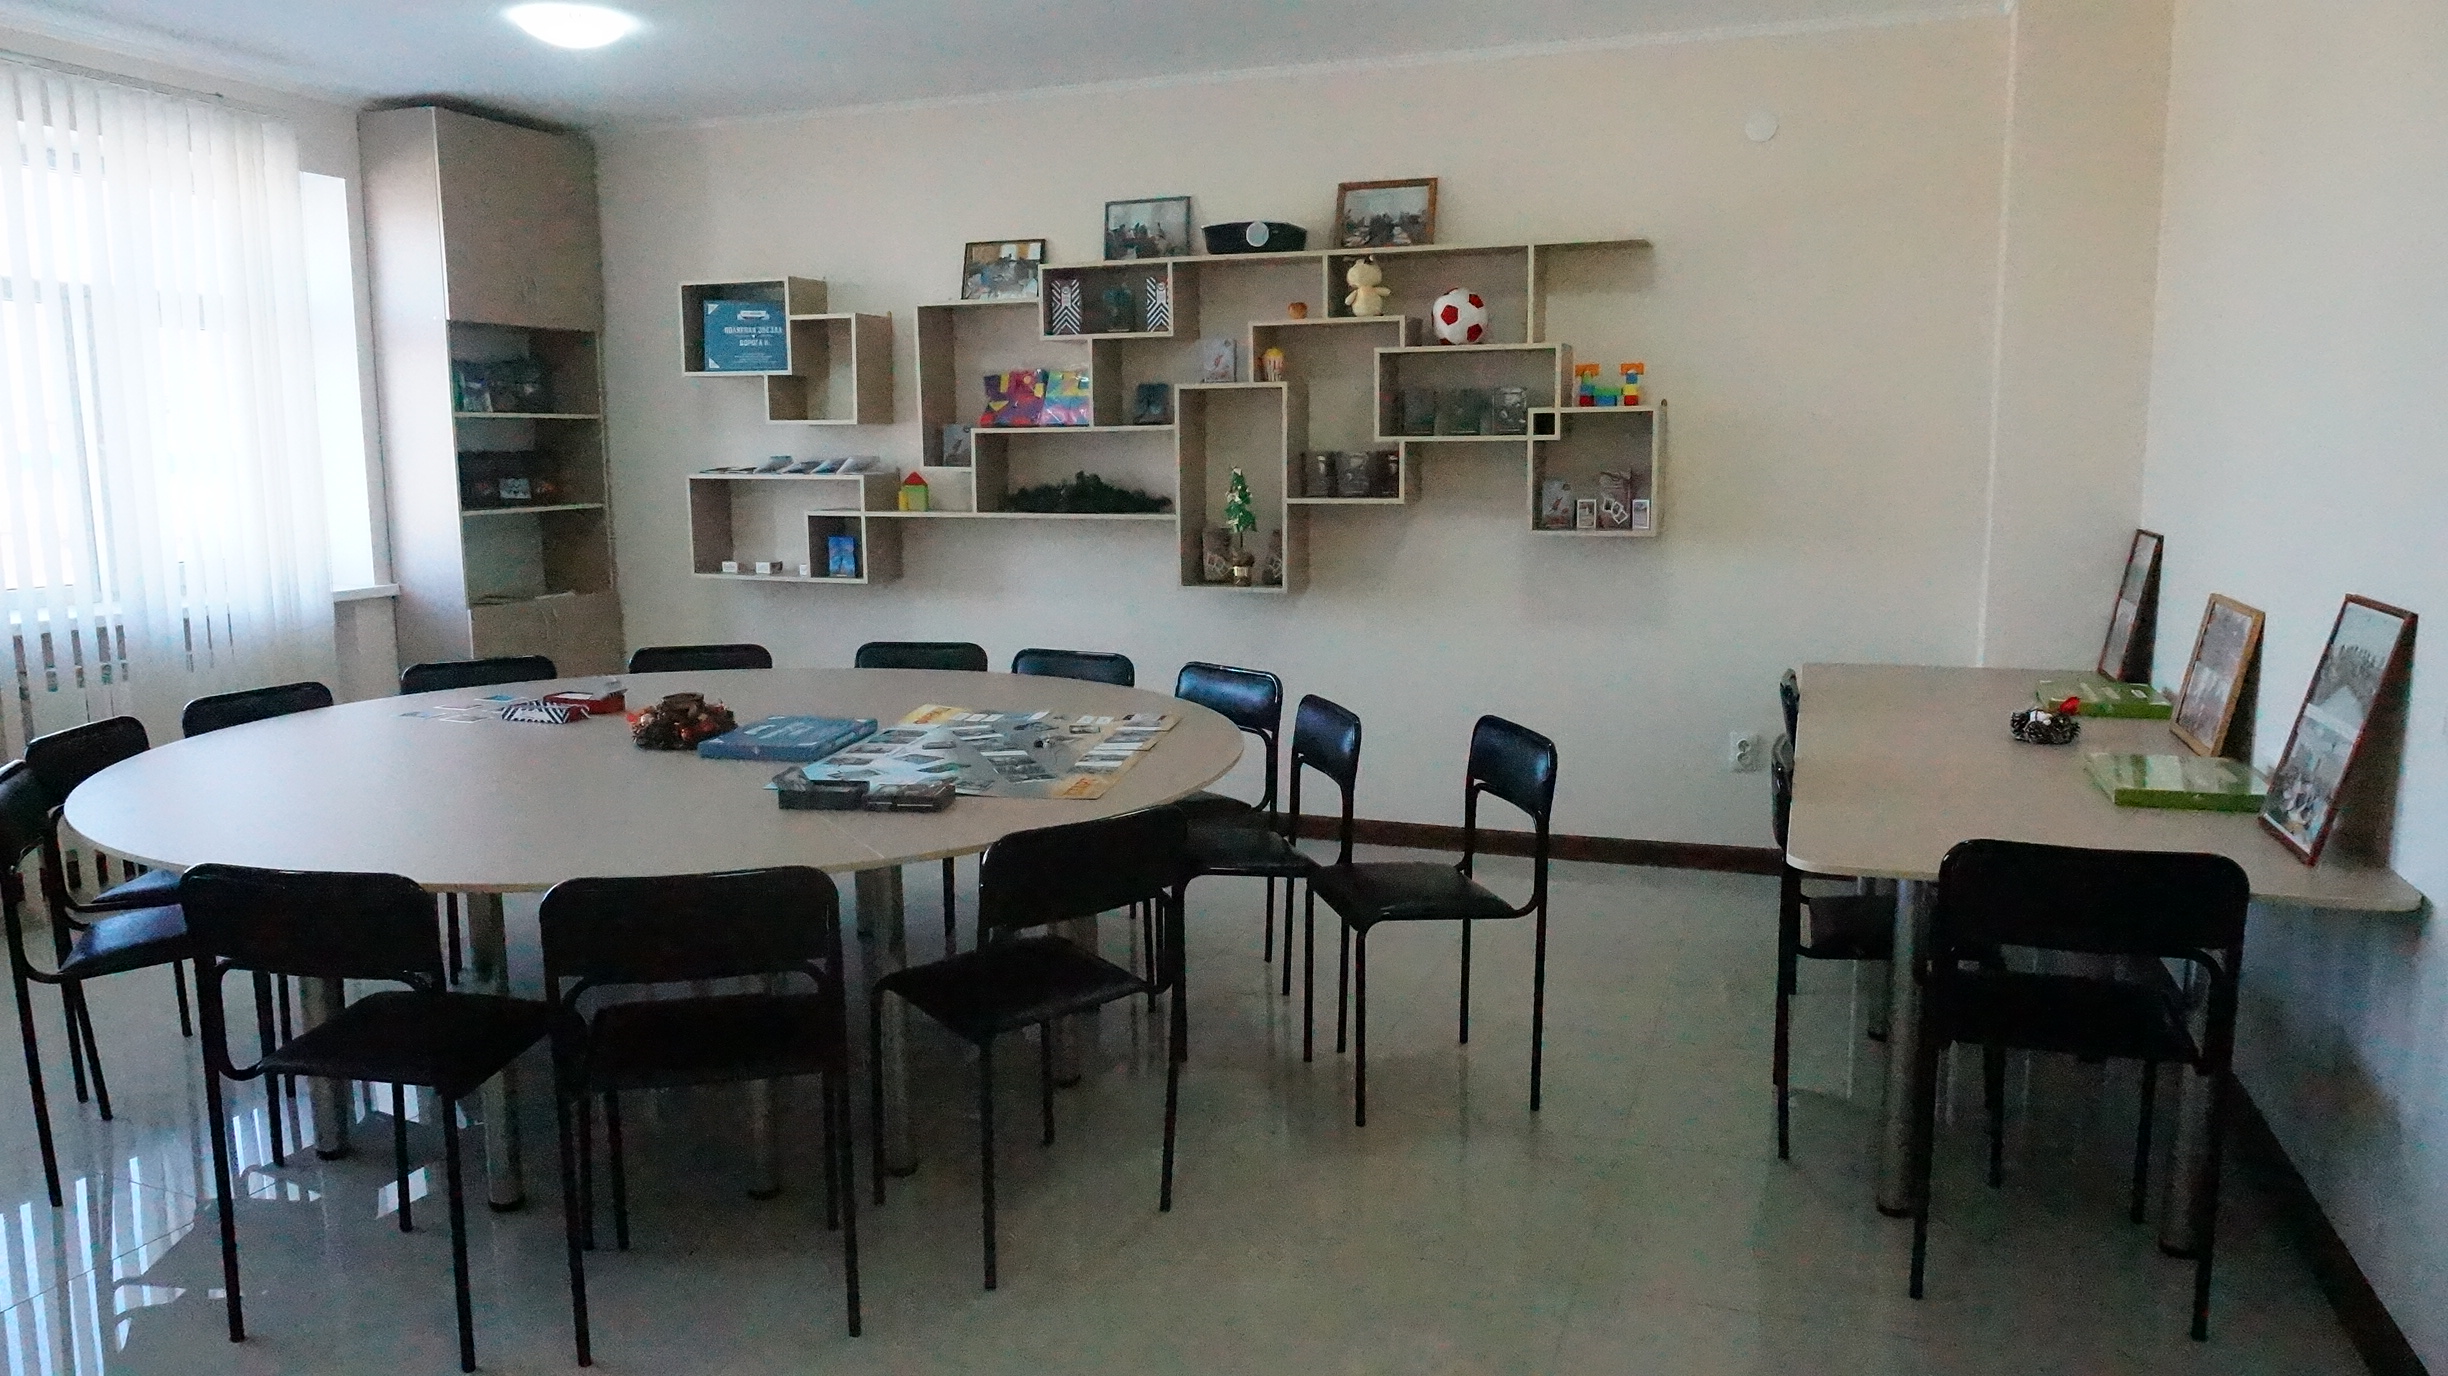 Центр ДПО открыл современный психологический кабинет для качественного практико-ориентированного обучения.